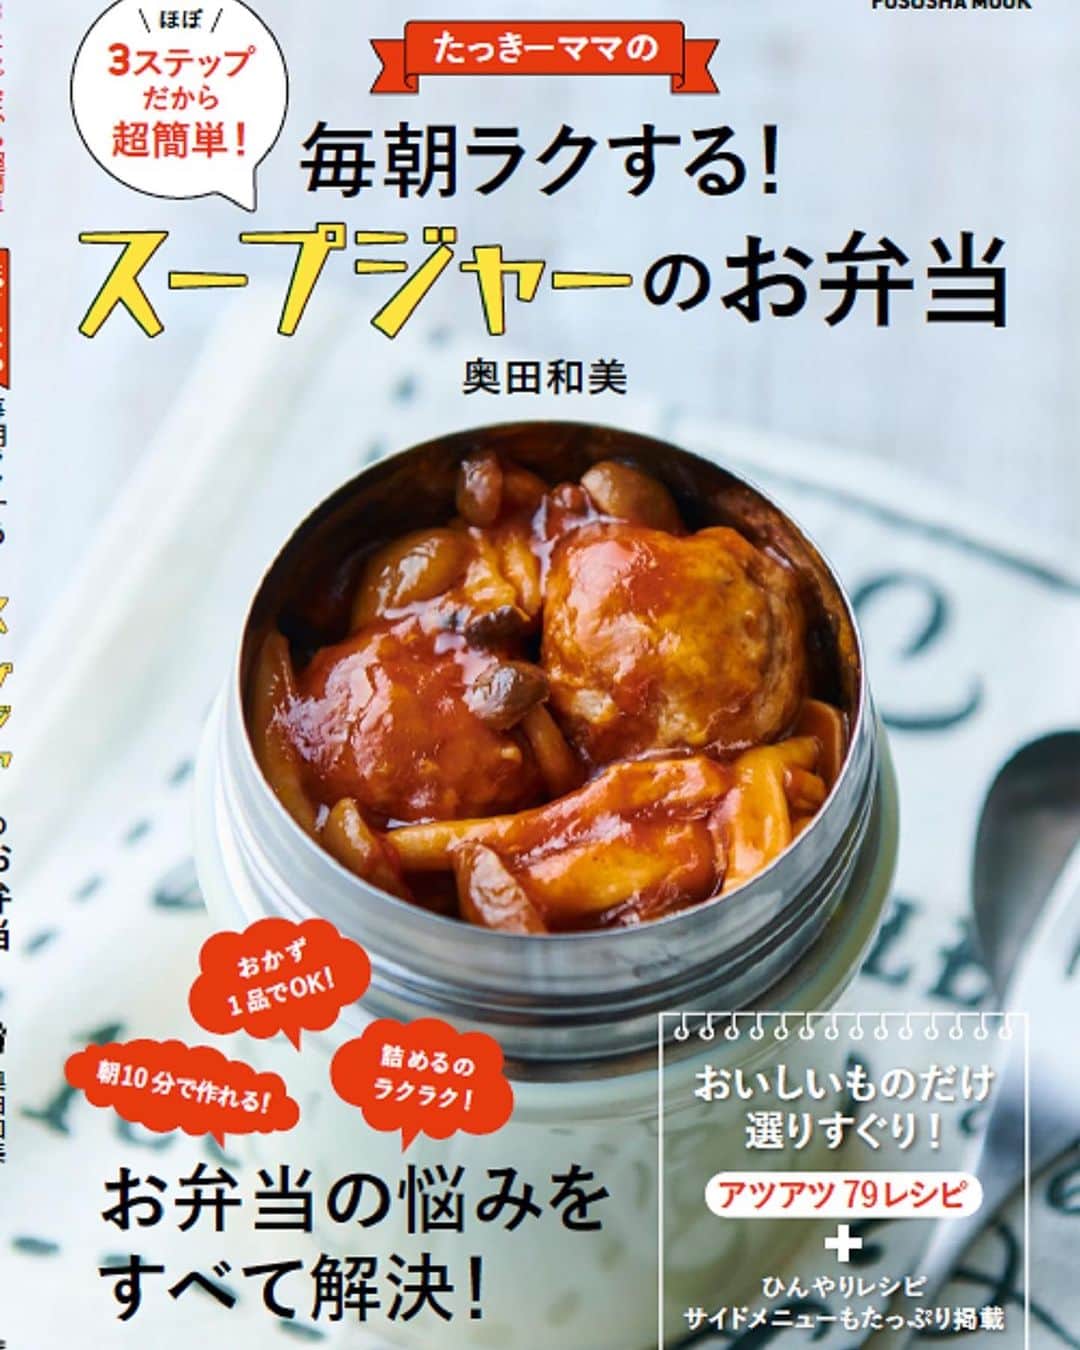 奥田和美のインスタグラム：「📕新刊のお知らせ📕  実は先月発売しました「ラクやせ！スープジャー弁当」と同時に作っていたのがこちら。  明後日11/9、扶桑社から 「毎朝ラクする！スープジャーのお弁当」 が発売となります。  こちら、扶桑社から過去に出版した2冊のスープジャー本から、絶対に外せない選りすぐりのレシピをギュギュッと集め、 さらに約10品の新レシピを加えた📣改訂版📣となります。  新刊の中のレシピと重複していますので、2冊ともお持ちの方はご注意下さい⚠️  ただ、実はめちゃくちゃヒットした1冊目がもう正規には売っていなくて、Amazonでは2500円という高値で売られている状態なので、 もし1冊目を持っていないという方はこの新刊があればこと足りるかなと思います。  新刊には全レシピ2～3ステップ、調理時間は5～10分のもののみ掲載しているので、忙しい朝に本当におすすめ。  家族やフォロワーの皆さんに褒められる推しレシピ、自身のヘビロテレシピなど、選りすぐりのレシピを集めた、 言わばベストオブザベストの1冊。  この1冊におすすめスープジャーレシピの全てが詰まっていると言っても過言ではありません。  と言うことで中身を紹介させて下さいね。  ✳️CHAPTER1 ホカホカおかずのスープジャー弁当BEST15 ↓↓↓ これは我が家の男子たちやフォロワーの皆さんから大好評だったものを15レシピご紹介！  定番中の定番、何かわからないものや見慣れないものは食べてくれない男性あるあるに頭を悩ませる皆さんにぜひ作って欲しいレシピがたくさん。 麺つゆだけで激うまなおでんレシピもあります！  ✳️CHAPTER2 レンジ調理で簡単！スープジャー弁当BEST12 ↓↓↓ 忙しい朝に、レンチンで出来るスープはめっちゃ助かります！ こちらの章の半分は新作レシピ。  こんなのもレンジで出来るんだ！という驚きと、レンジならではの利点でぜひ更にラクして下さい。  ✳️CHAPTER3 アツアツ麺＆ご飯のスープジャー弁当BEST15 ↓↓↓ 主食とおかずが入ったスープなので、これ1つ持っていけばOKなのが嬉しい。 生米や乾燥パスタなど、そのまま入れてスープジャーの中で調理するから、ご飯の炊き忘れの時にも！  ✳️CHAPTER4 あったか！具だくさんのスープ弁当BEST22 ↓↓↓ おにぎりやパンなどのお供に持って行って欲しい、具だくさんで食べ応えのあるスープ。 あっさり味とこってり味に分けてご紹介しています。  🌸ひんやりスープジャー弁当もあるよ（これから寒くなるけど） 🌸おにぎりカタログもあります  ✳️CHAPTER5 スープやあんかけで豪快に！ぶっかけ弁当ベストオブ10 ↓↓↓ これぞスープジャー弁当の真骨頂とでも言うべき、スープジャーの1番嬉しい食べ方ではないかと思います。  白いご飯さえお弁当箱に詰めれば、あとはぶっかけスープを作るだけ。 作るのは簡単だし、食べる人も嬉しい究極のお弁当ではないかと思っています。  大切なことなのでもう一度言いますが⚠️ 「たっきーママの朝ラク！スープジャー弁当」 「たっきーママの最ラク！スープジャー弁当」 を再編集し、新たなレシピ約10品を加えた改訂版となります。  私のスープジャーレシピのベスト本となるこちらは明後日11/9発売です。 よろしくお願いいたします！  ※ストーリー又はトップ画像からご購入頂けます↓↓↓ @kazumiokuda   #毎朝ラクするスープジャーのお弁当  #スープジャー弁当  #スープジャーのお弁当  #スープジャー  #改訂版  #ベスト版」